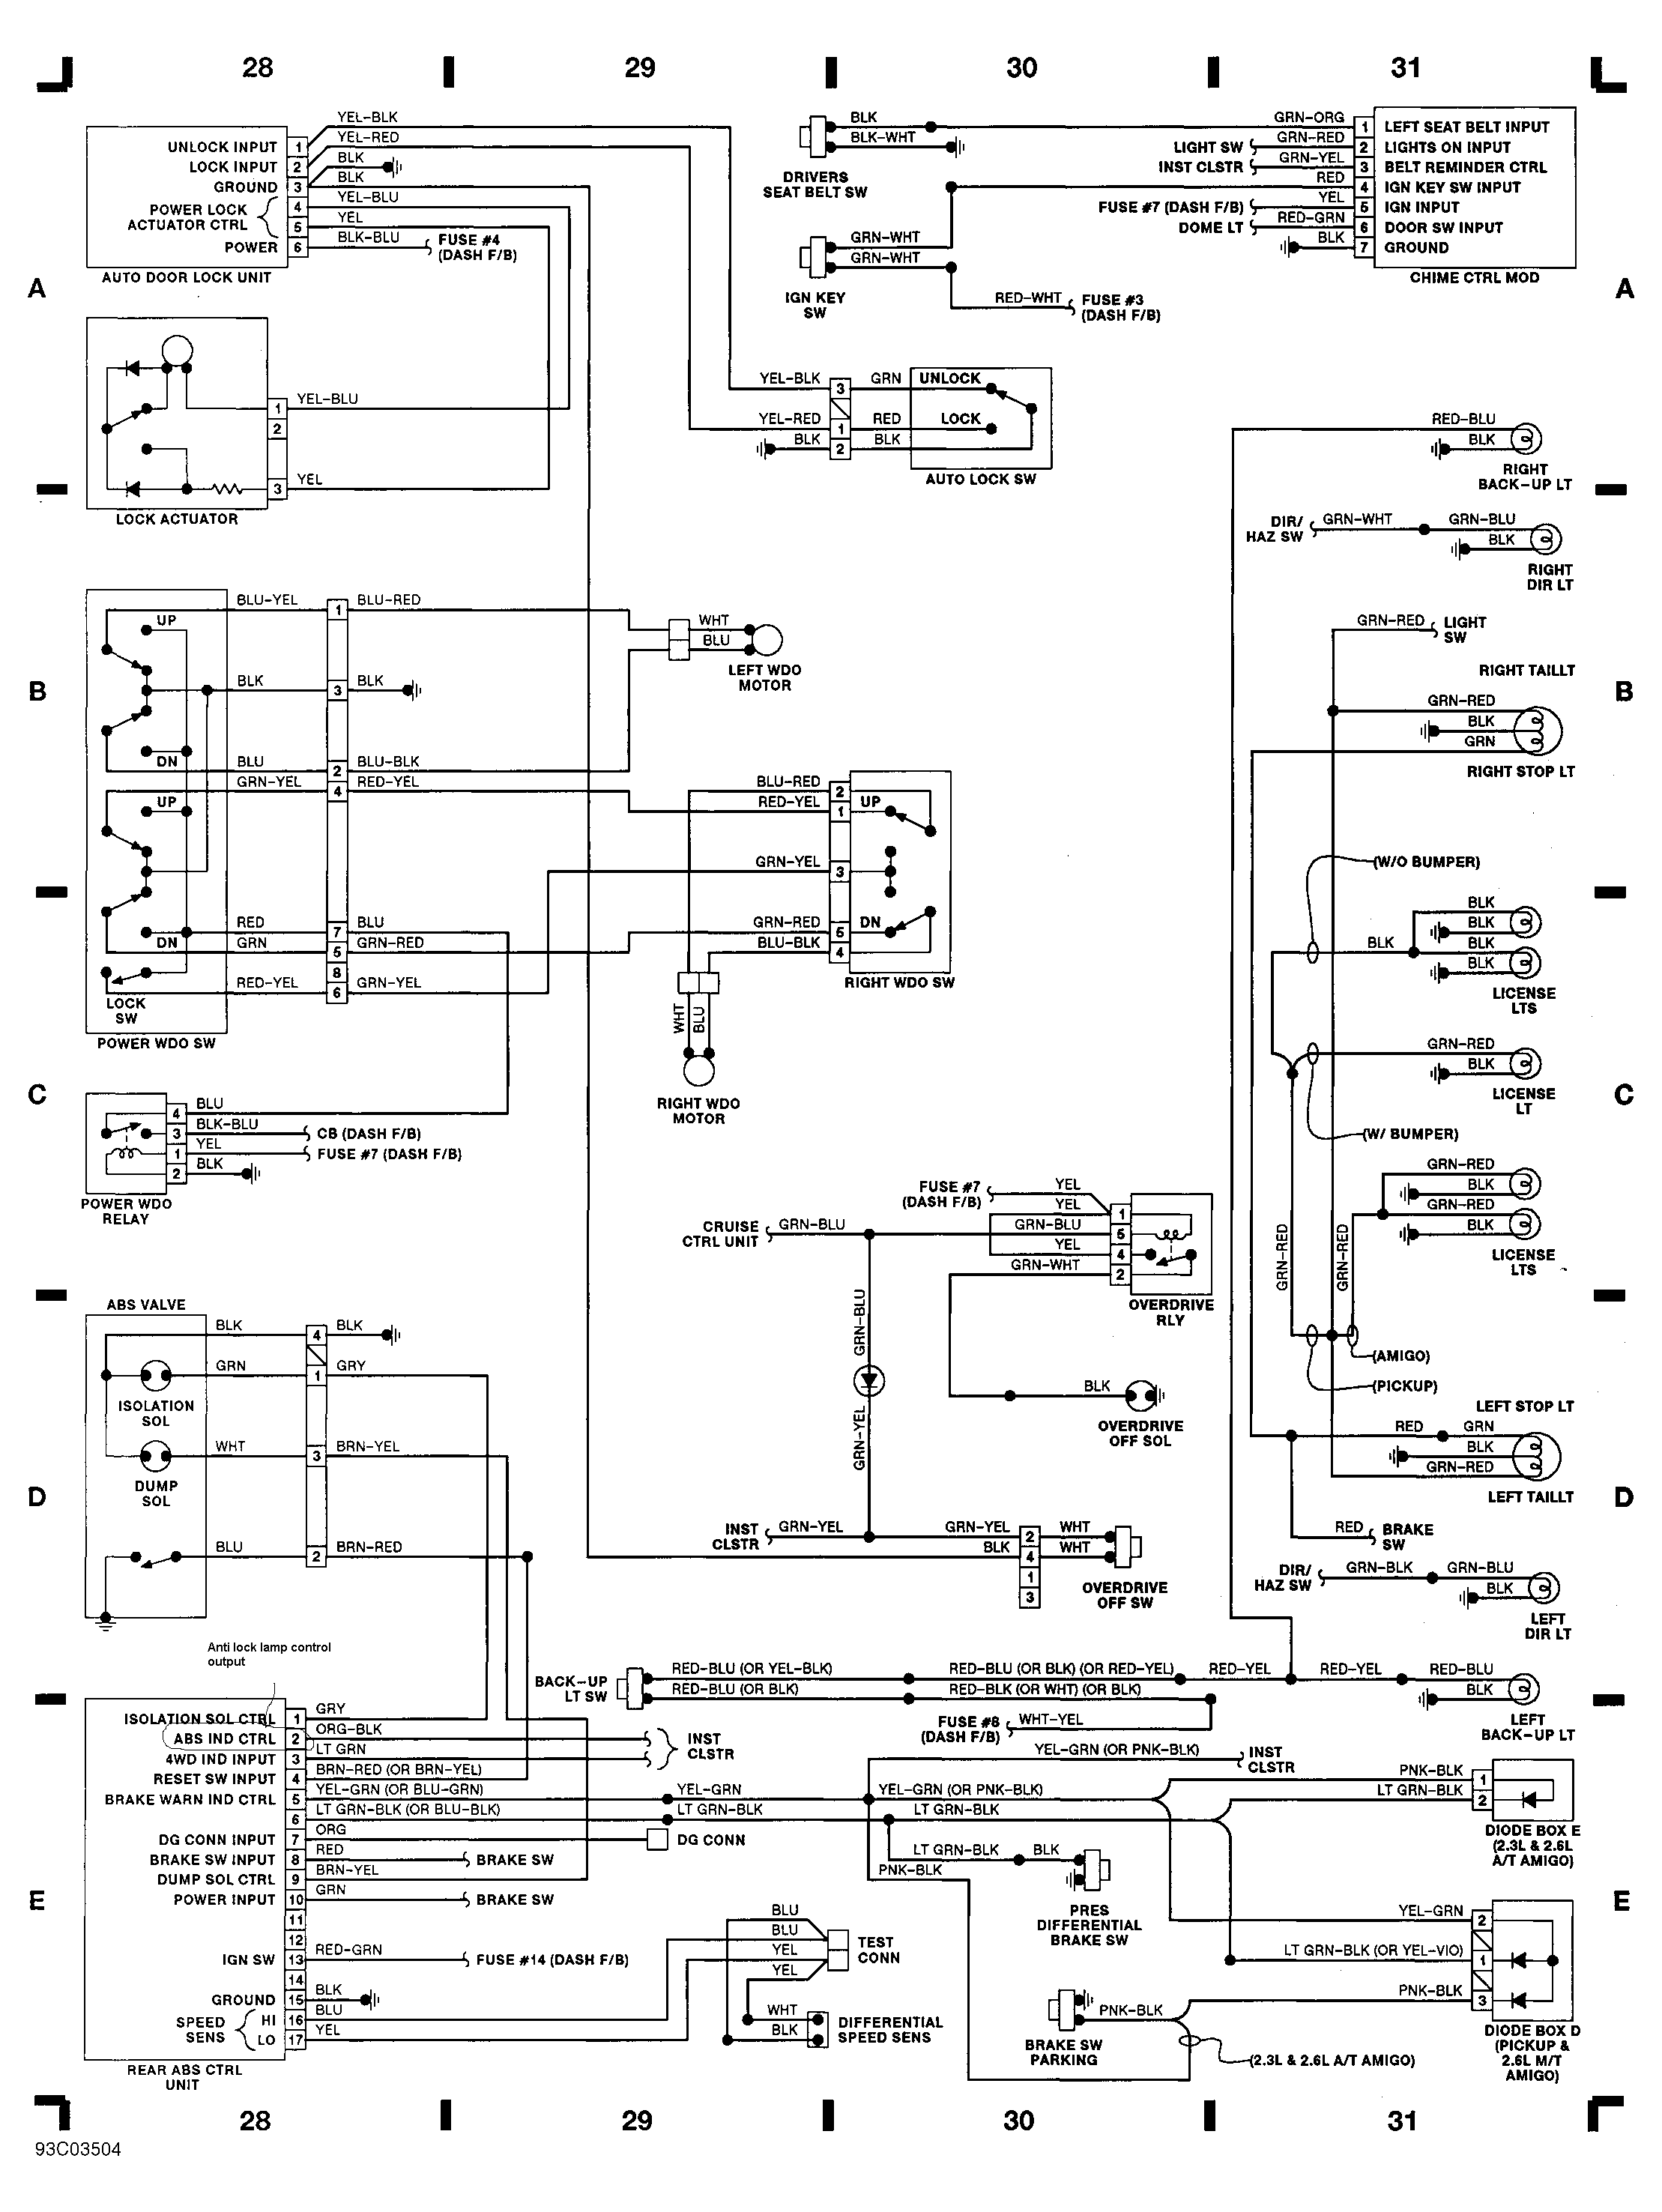 1999 Npr Isuzu Wiring Diagram Of Computer 5.7 Hd